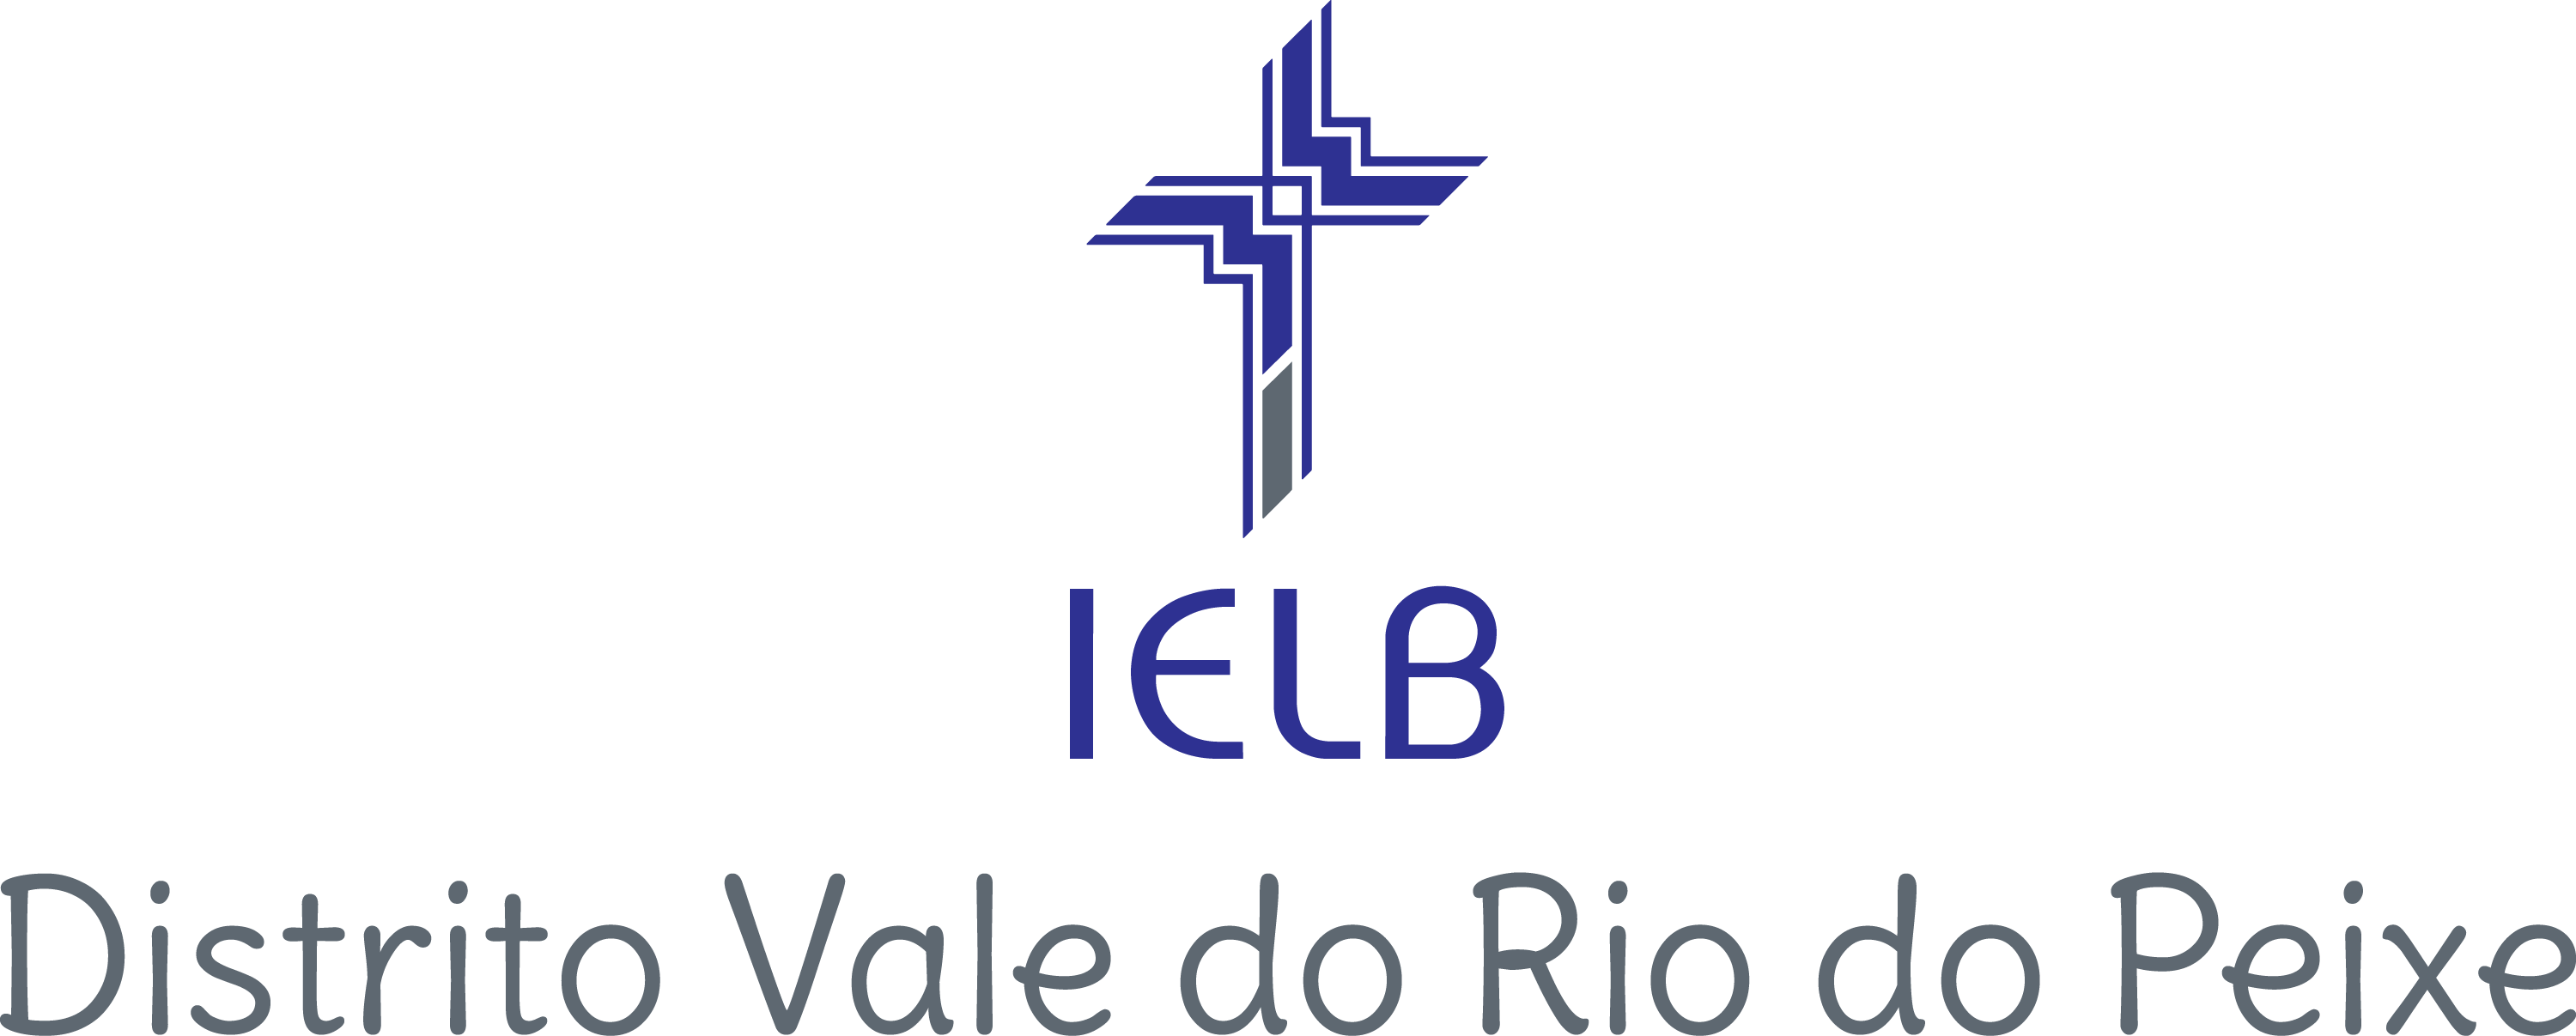 Assinatura visual - Região Sul - Vale do Rio do Peixe